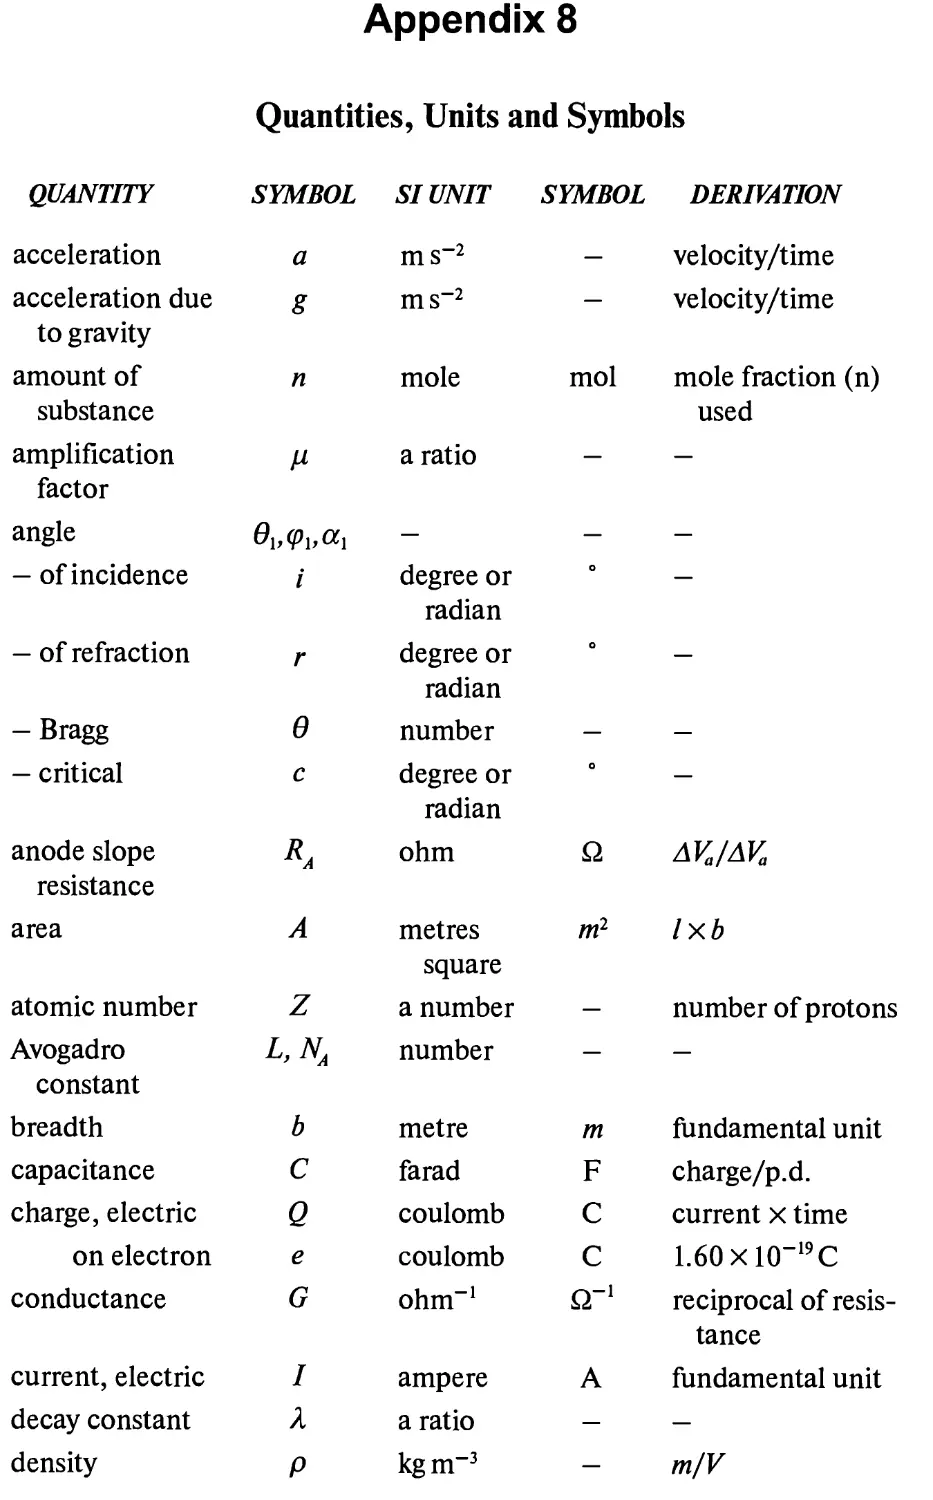 Appendix 8. Quantities, Units and Symbols